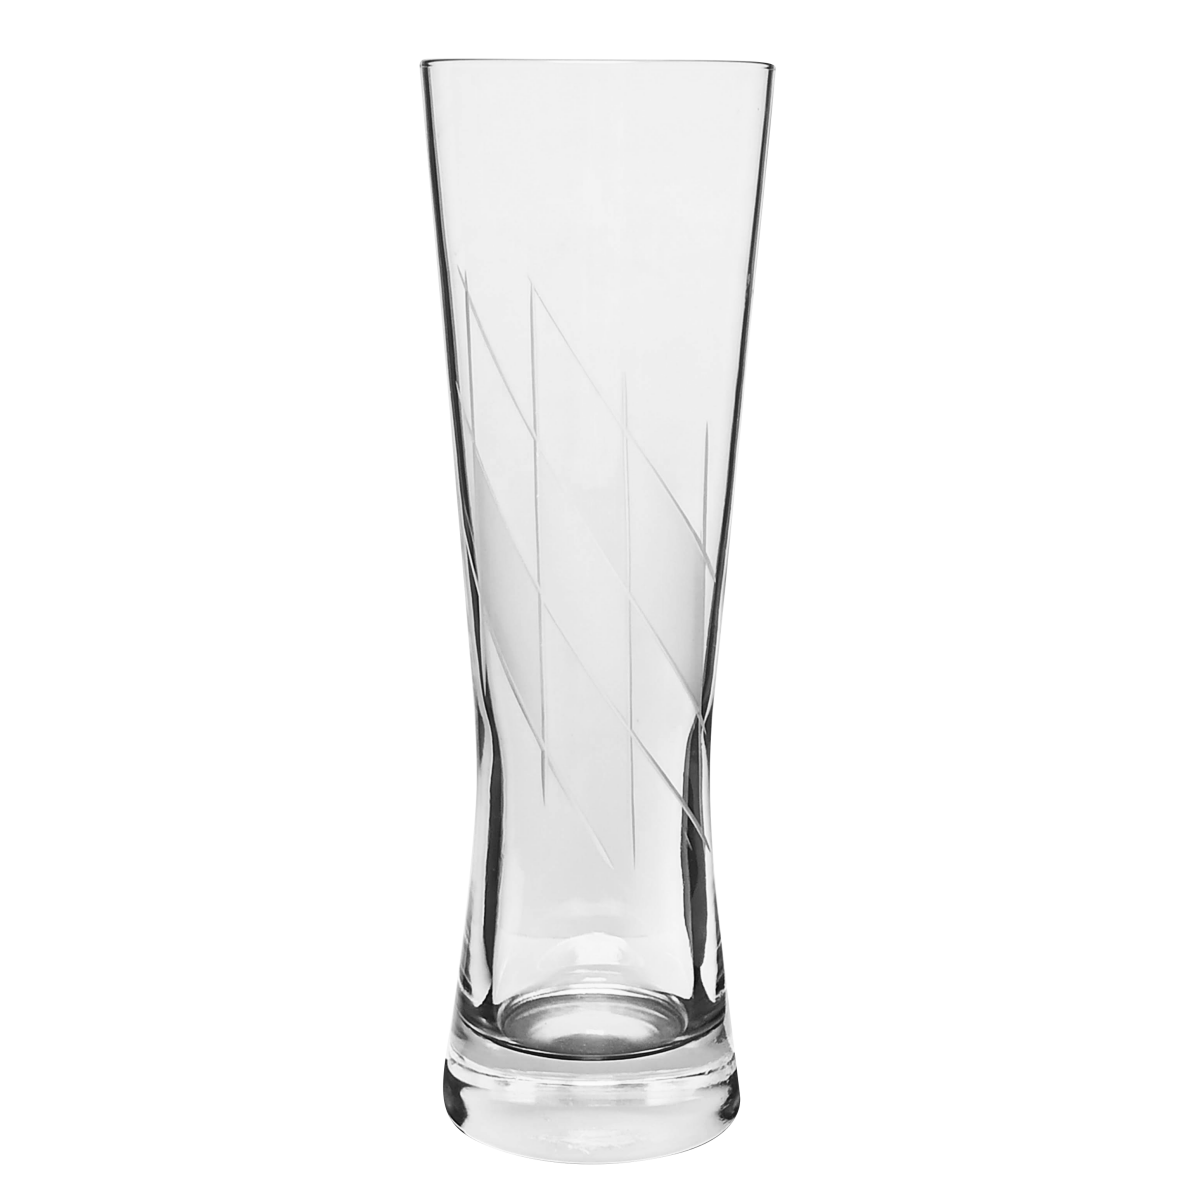 Weißbierglas nur.bayern 0,5L, 9,80 €